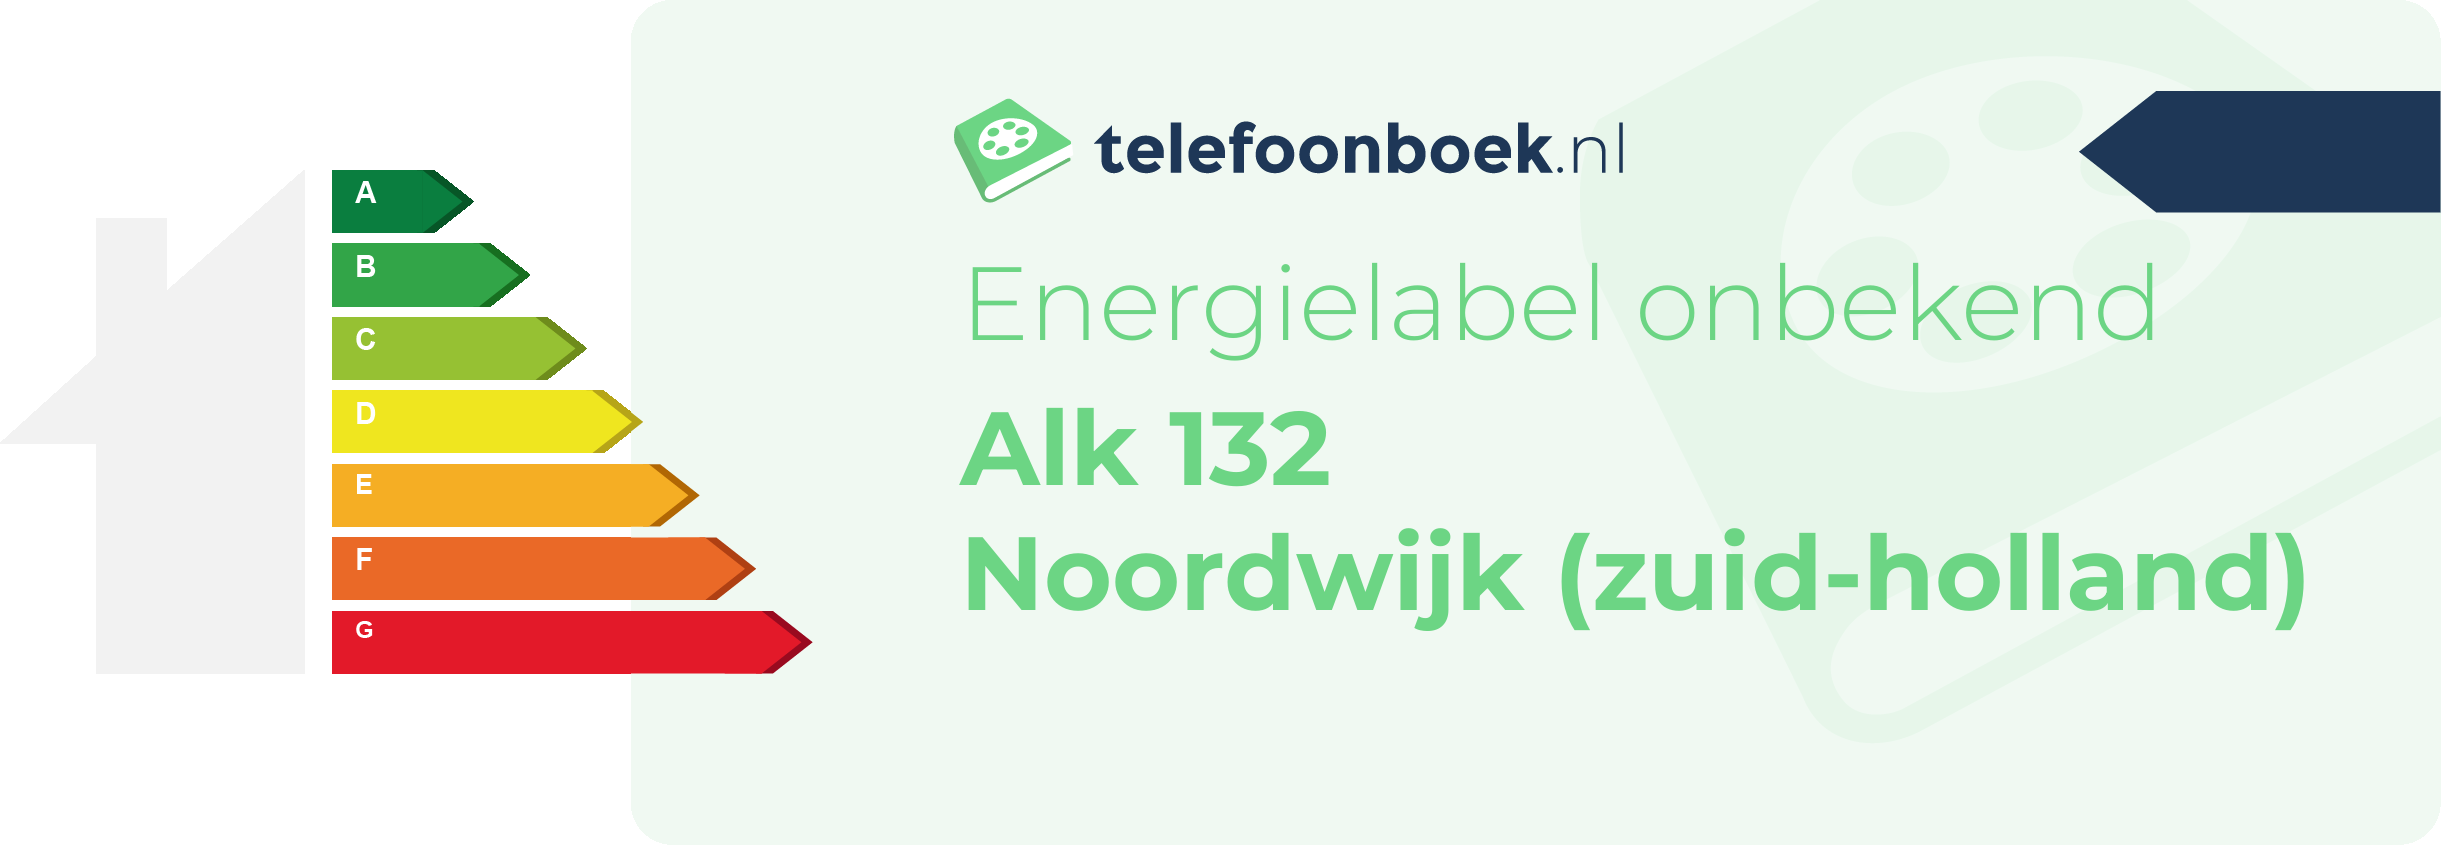 Energielabel Alk 132 Noordwijk (Zuid-Holland)